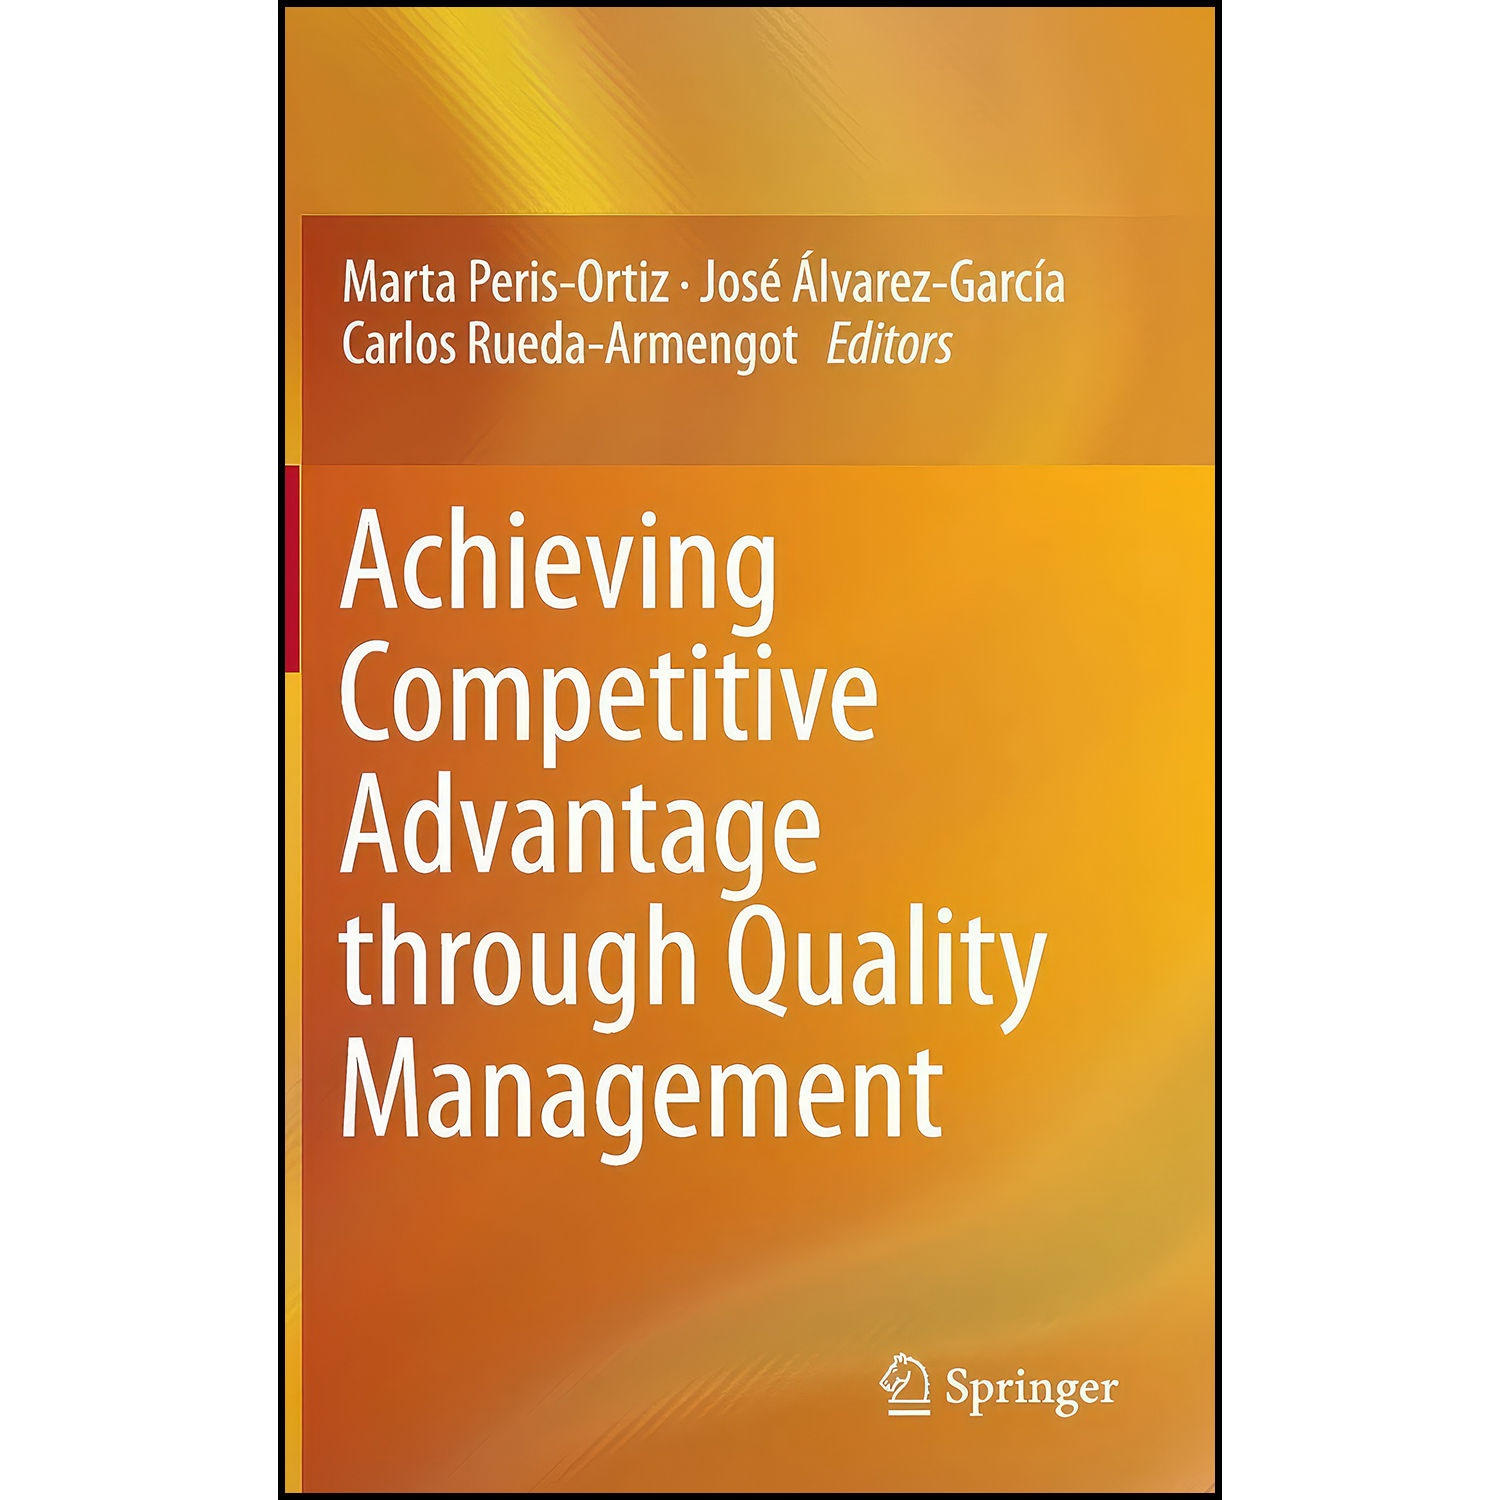 کتاب Achieving Competitive Advantage through Quality Management اثر جمعي از نويسندگان انتشارات Springer